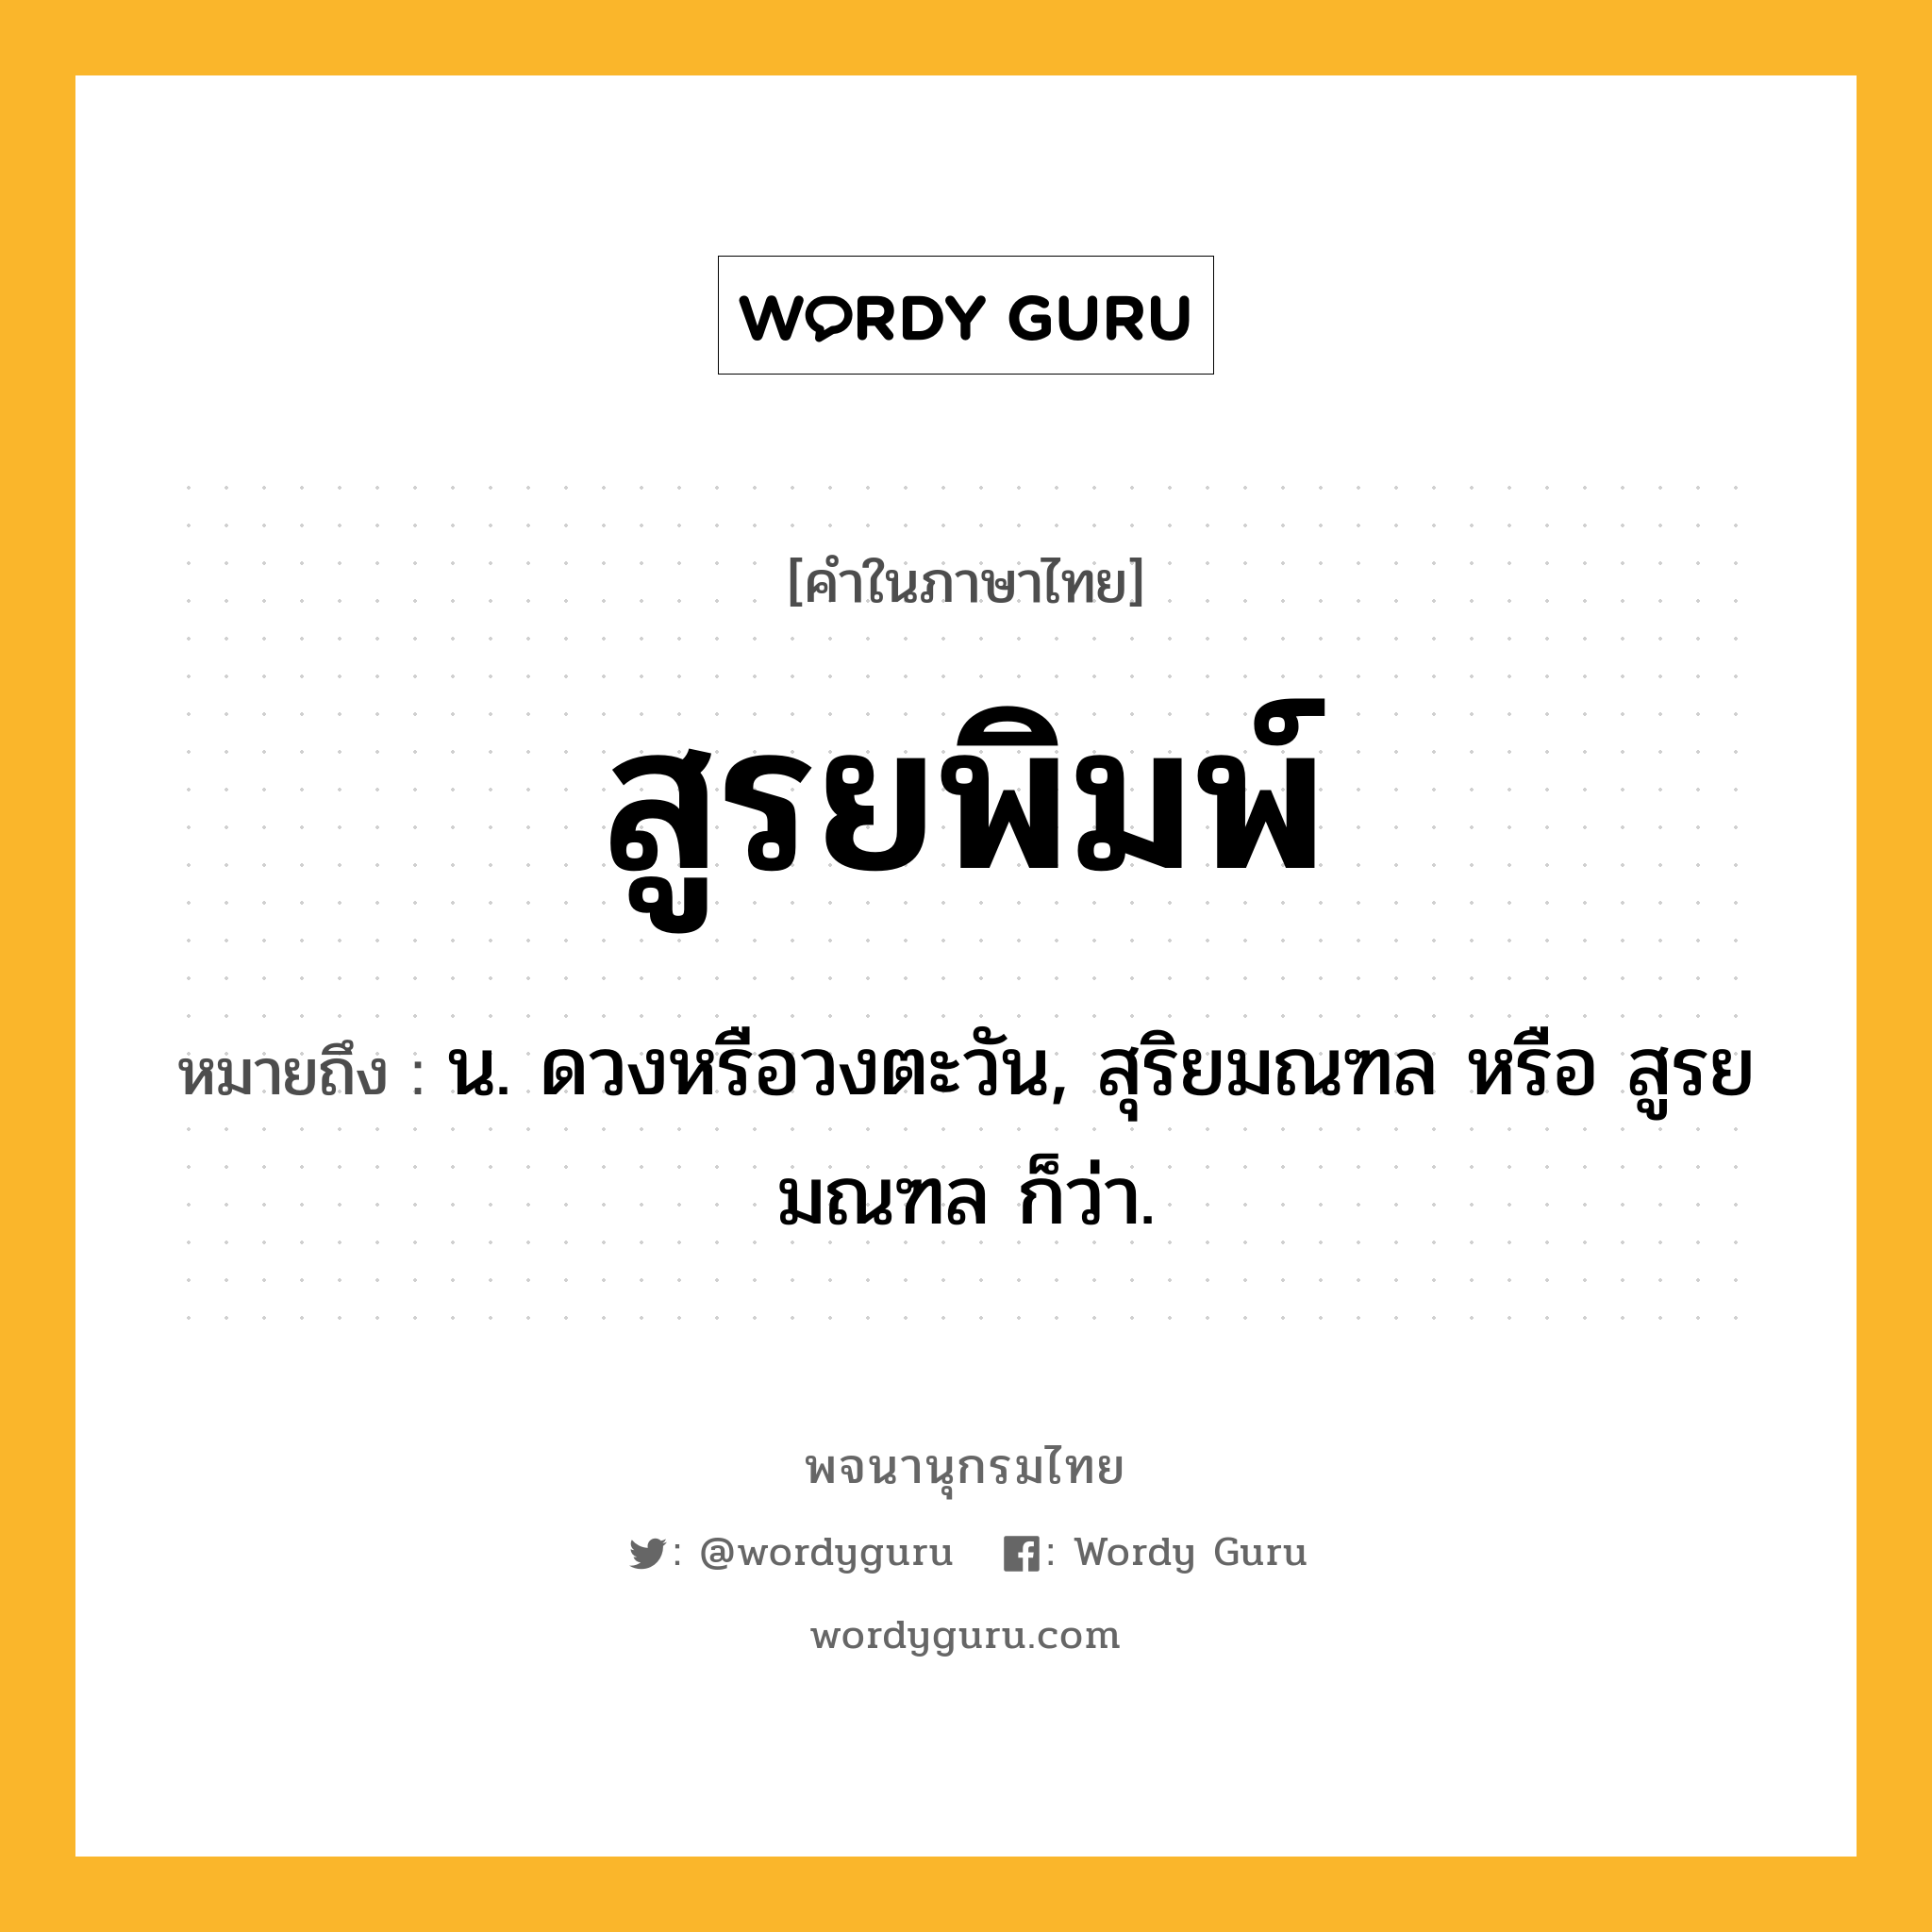 สูรยพิมพ์ ความหมาย หมายถึงอะไร?, คำในภาษาไทย สูรยพิมพ์ หมายถึง น. ดวงหรือวงตะวัน, สุริยมณฑล หรือ สูรยมณฑล ก็ว่า.